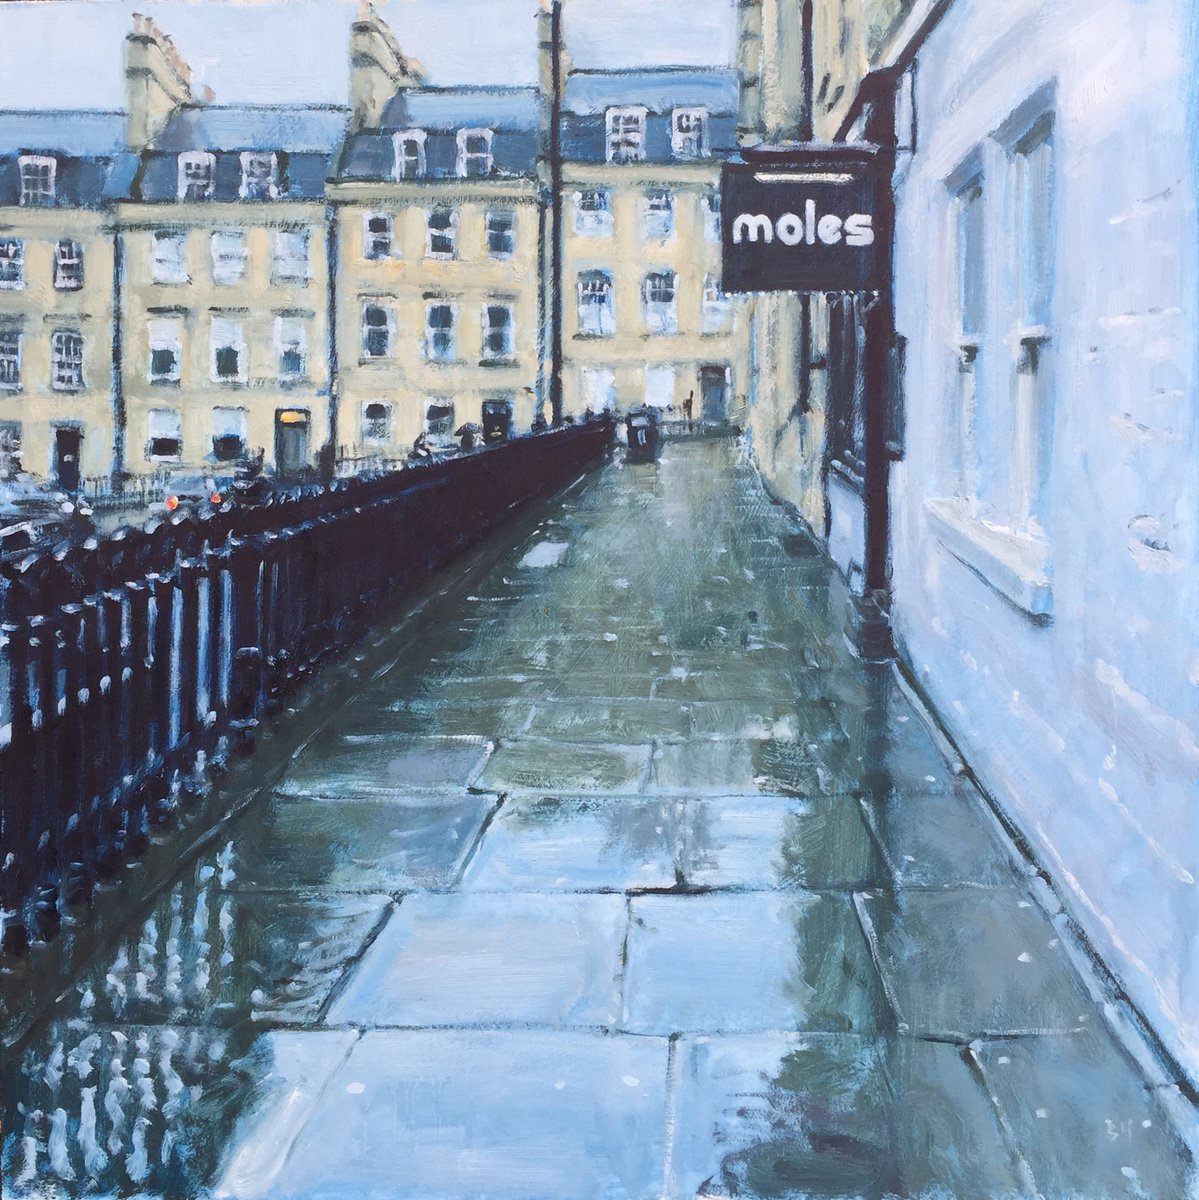 Moles Club, Bath by Ben Hughes